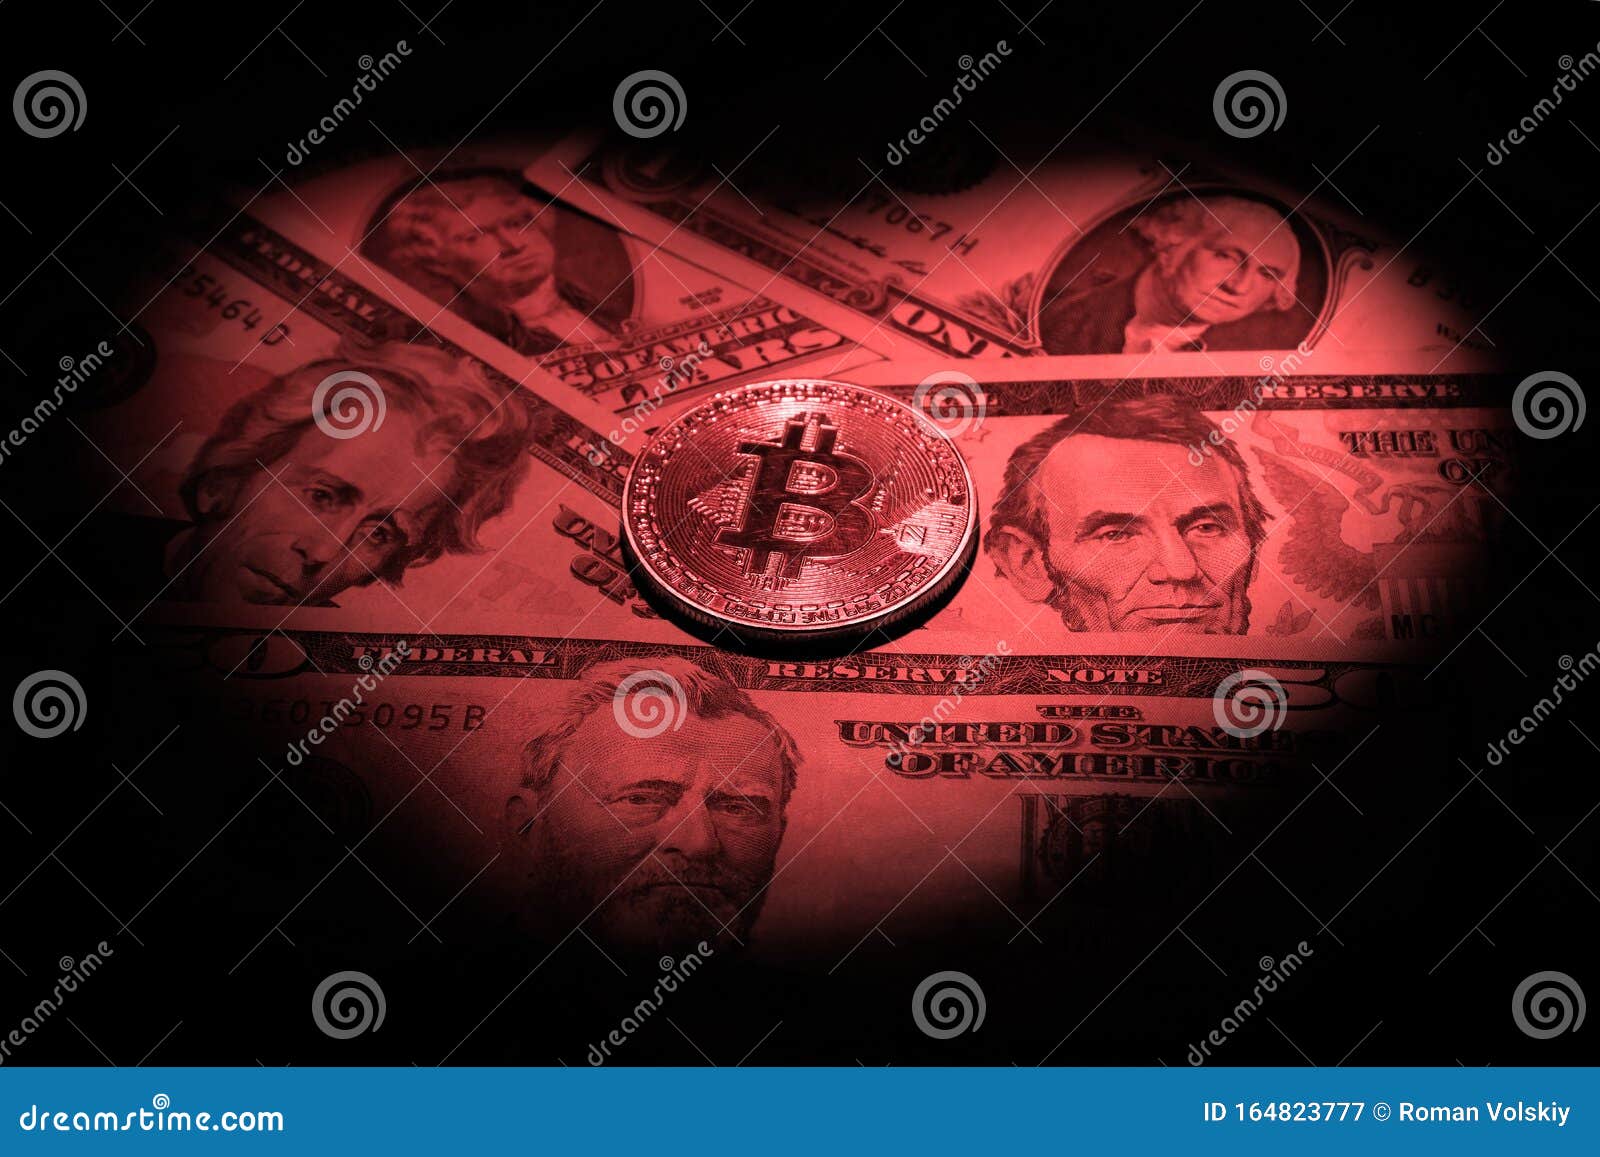 commercio aplikasi bitcoin terbaik conviene investire in bitcoin 2021